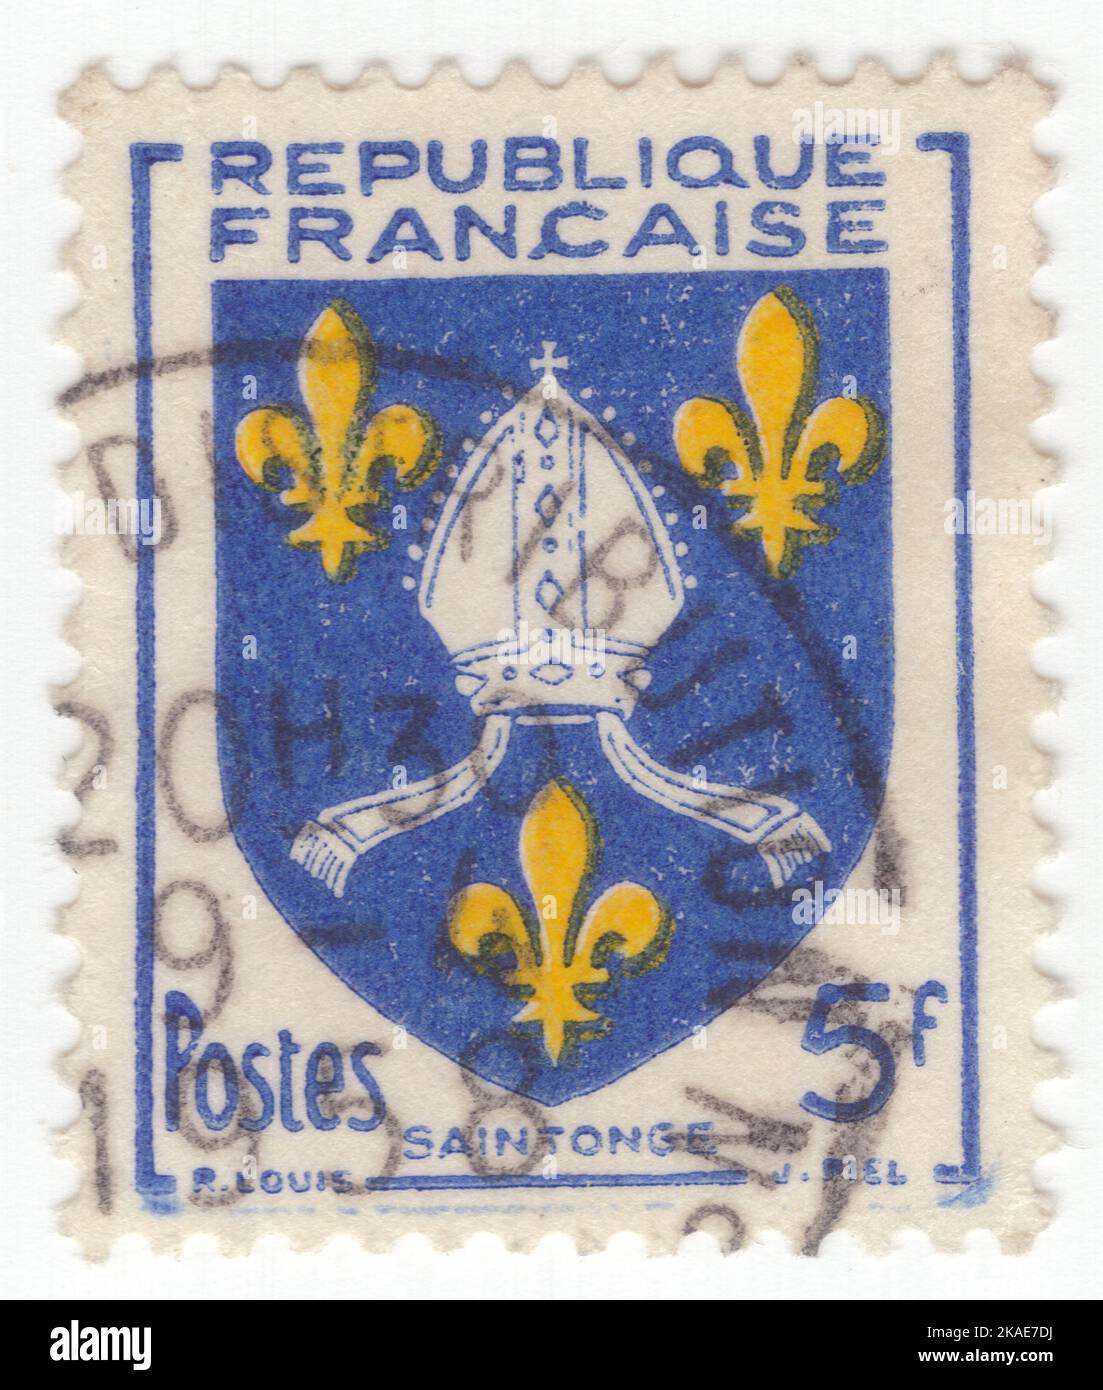 FRANCE - 1954 : un timbre-poste bleu et jaune de 5 francs représentant le bras du comté de Saintonge, est une ancienne province de France située sur la côte ouest centrale de l'Atlantique. La capitale était Saintes (Xaintes, Xainctes). Les autres villes principales sont Saint-Jean-d'Angély, Jonzac, Frontenay-Rohan-Rohan, Royan, Marennes, Pons et Barbezieux-Saint-Hilaire Banque D'Images